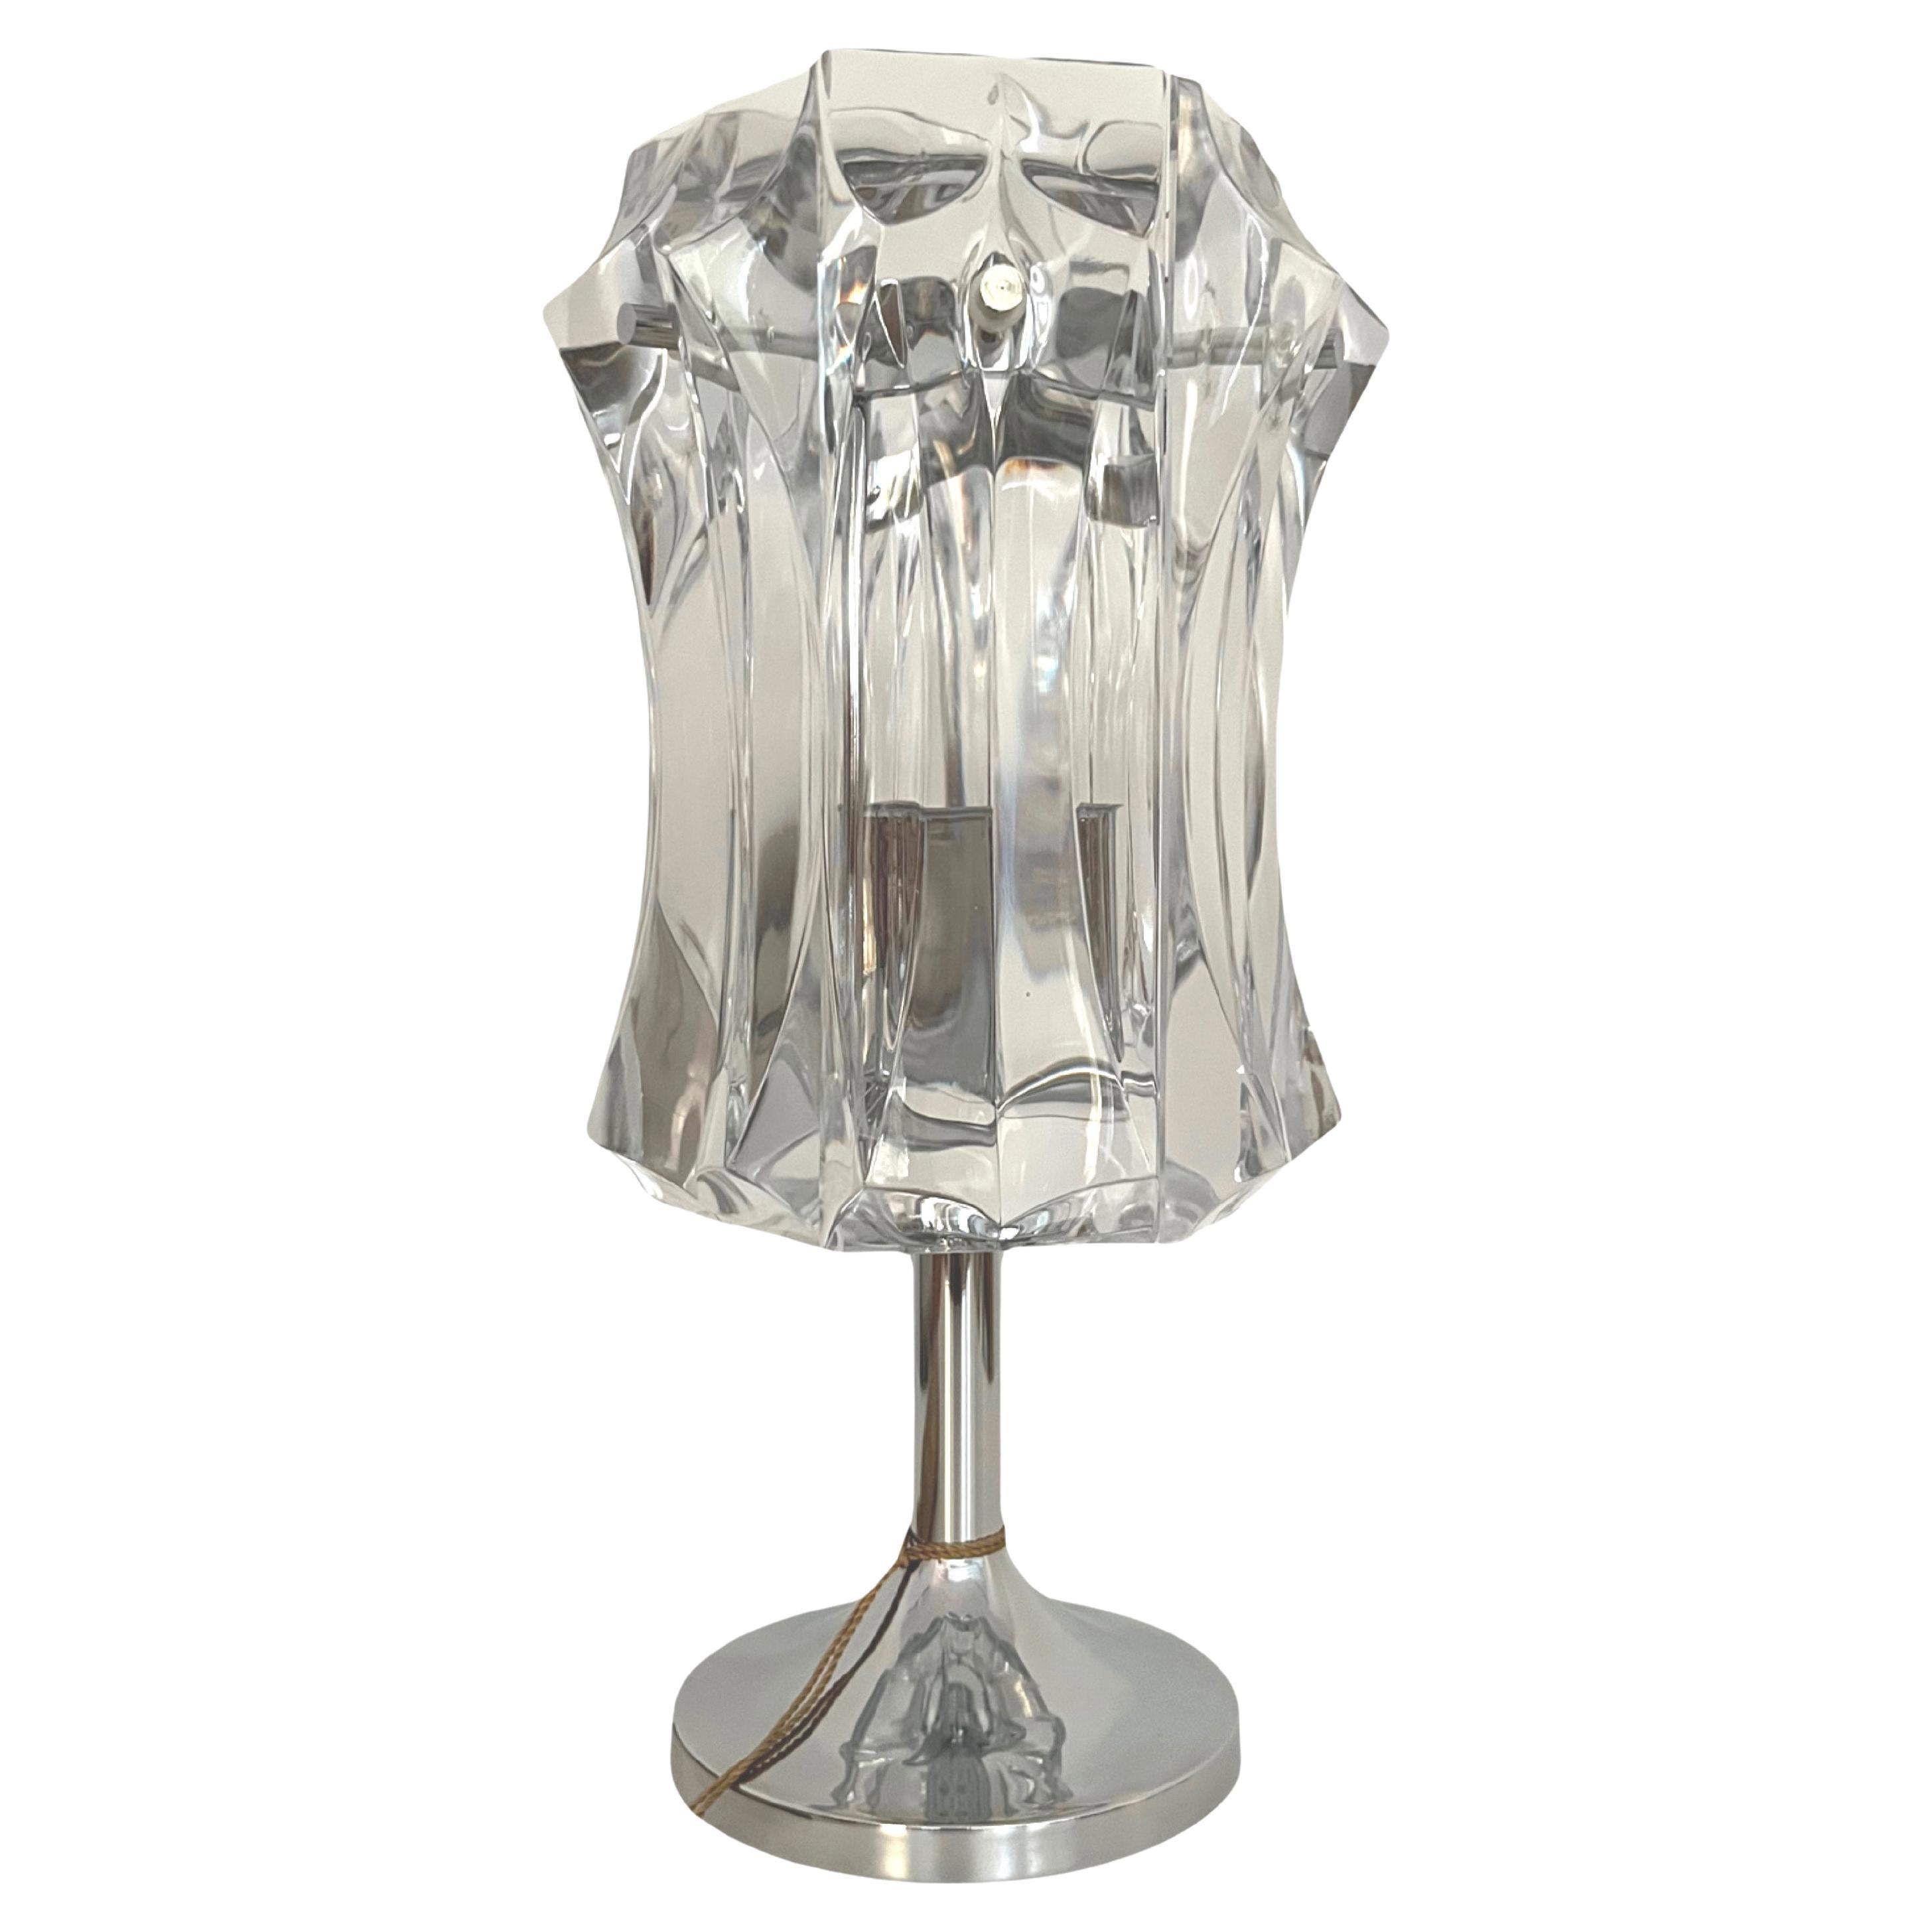 German Midcentury Crystals Chromed Metal Table Lamp by Kinkeldey, 1970s For Sale